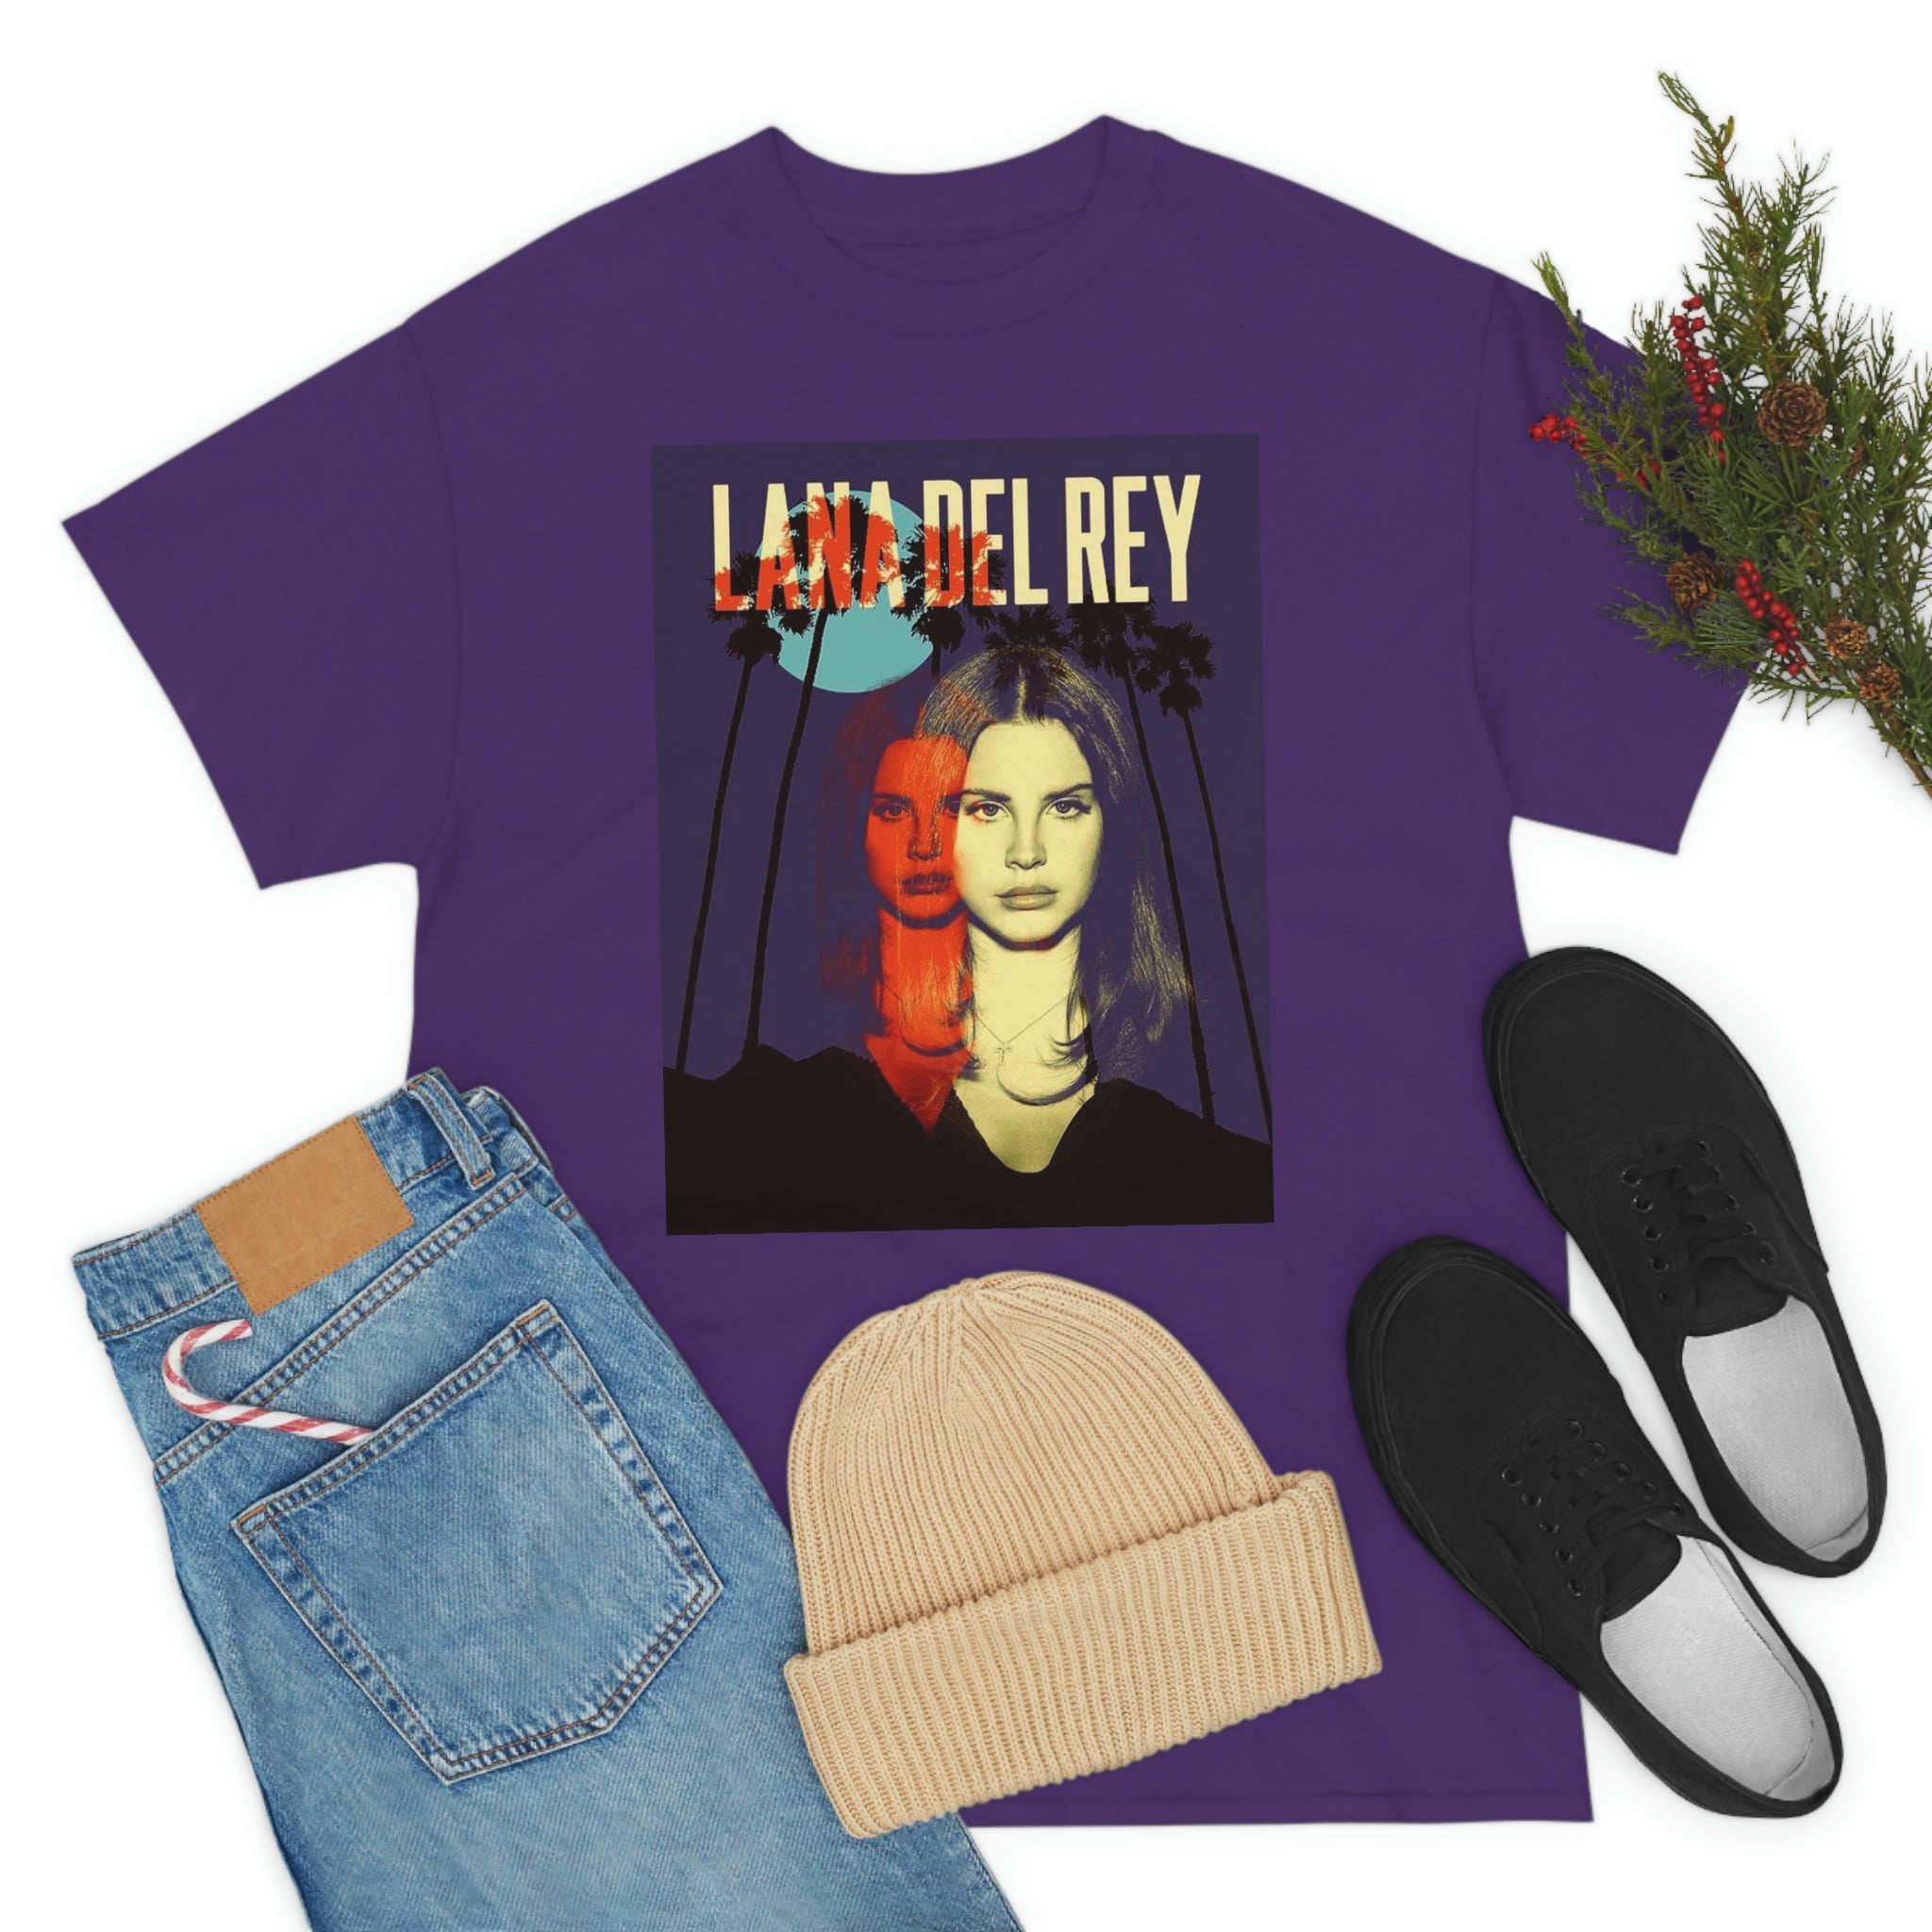 Lana Del rey New Album T-shirt, Lana del rey merch 2023, LDR 2023, Lana Del rey merch